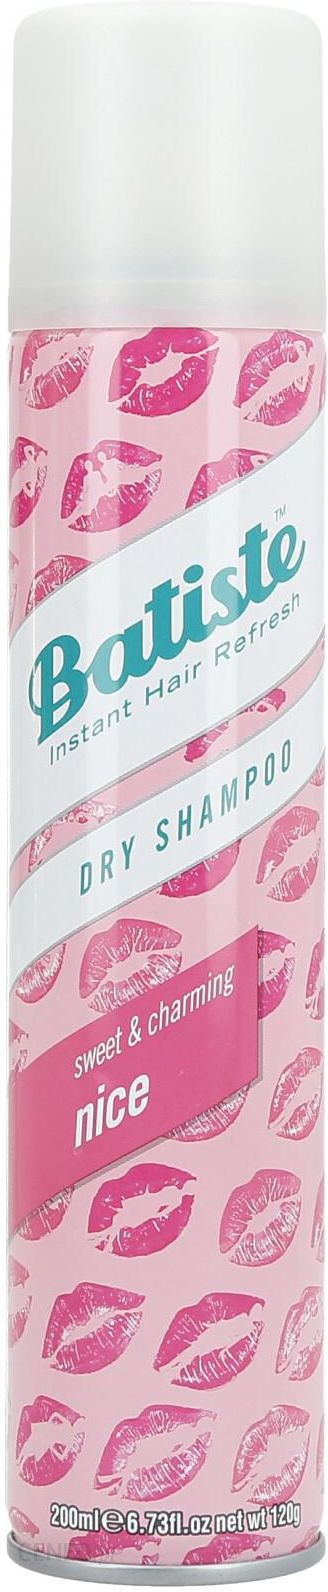 szampon brzozowy na co